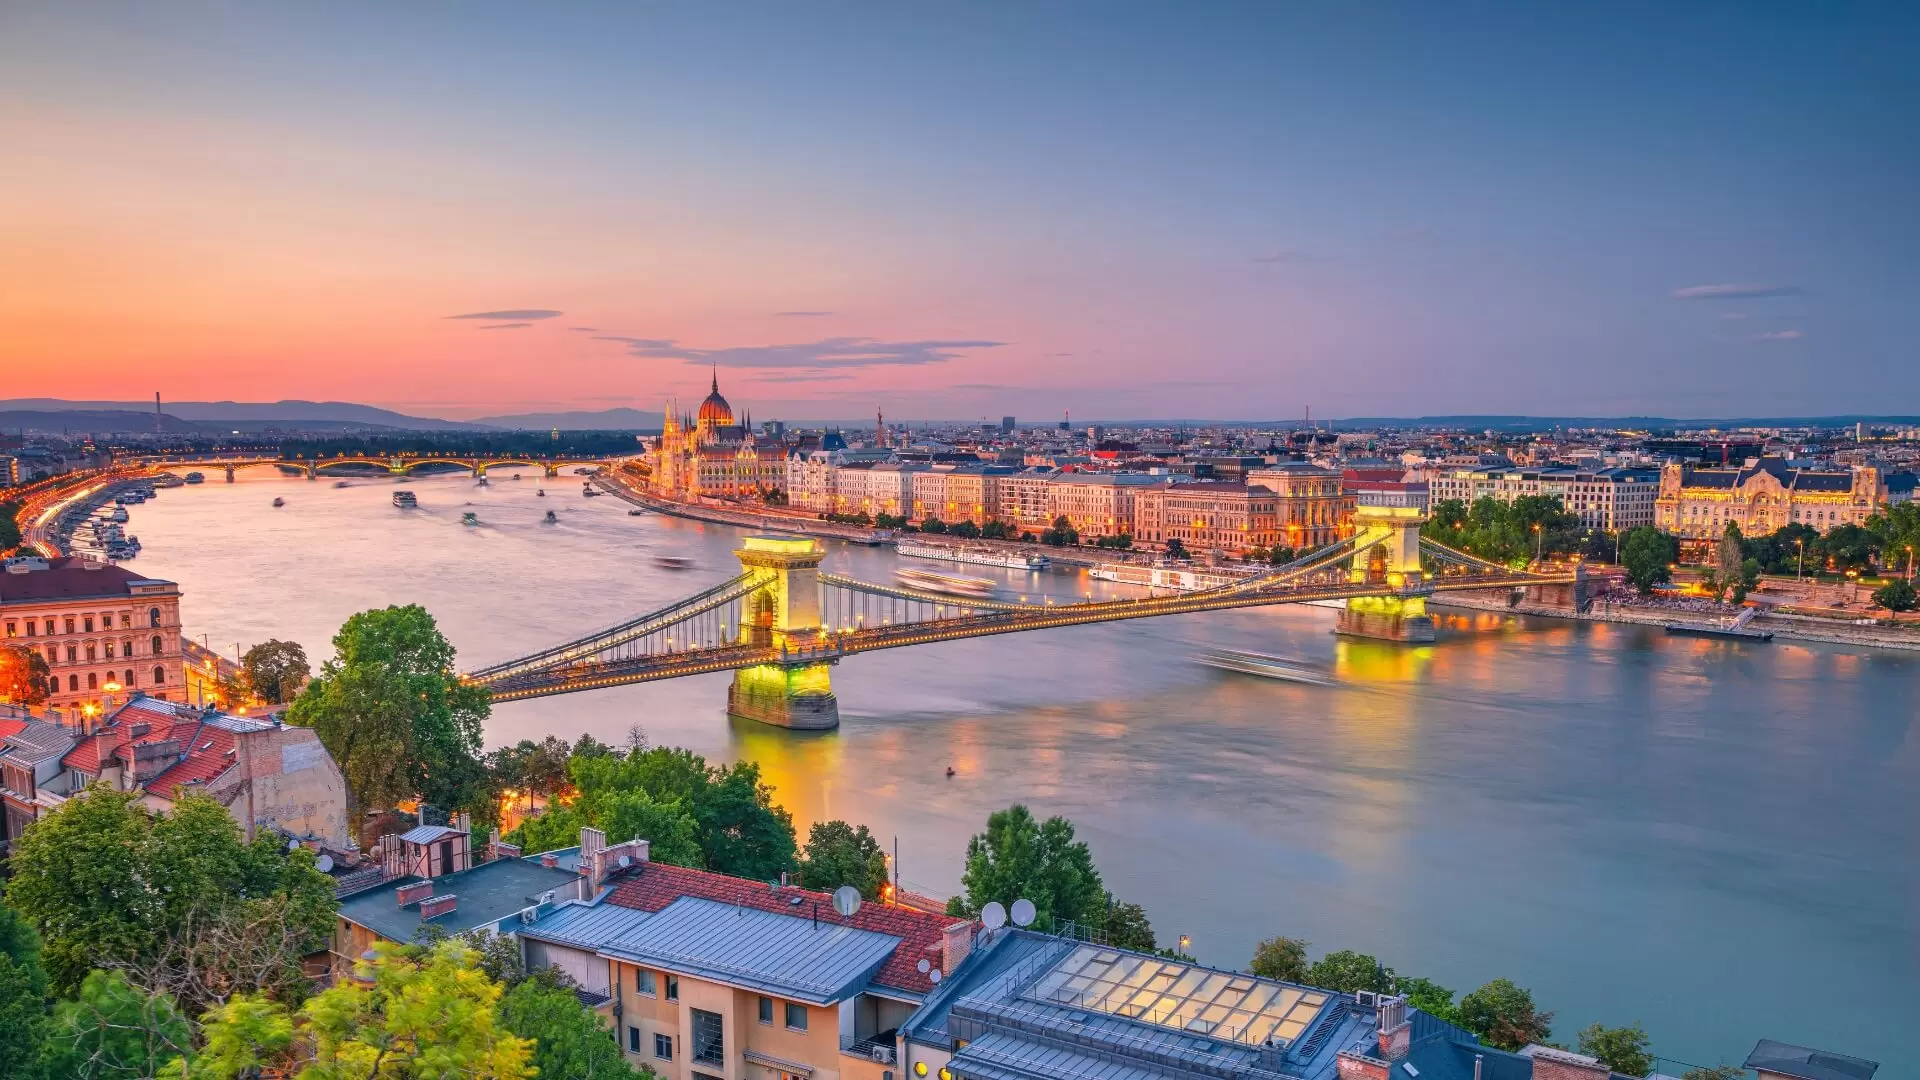 Destination: Budapest, Hungary